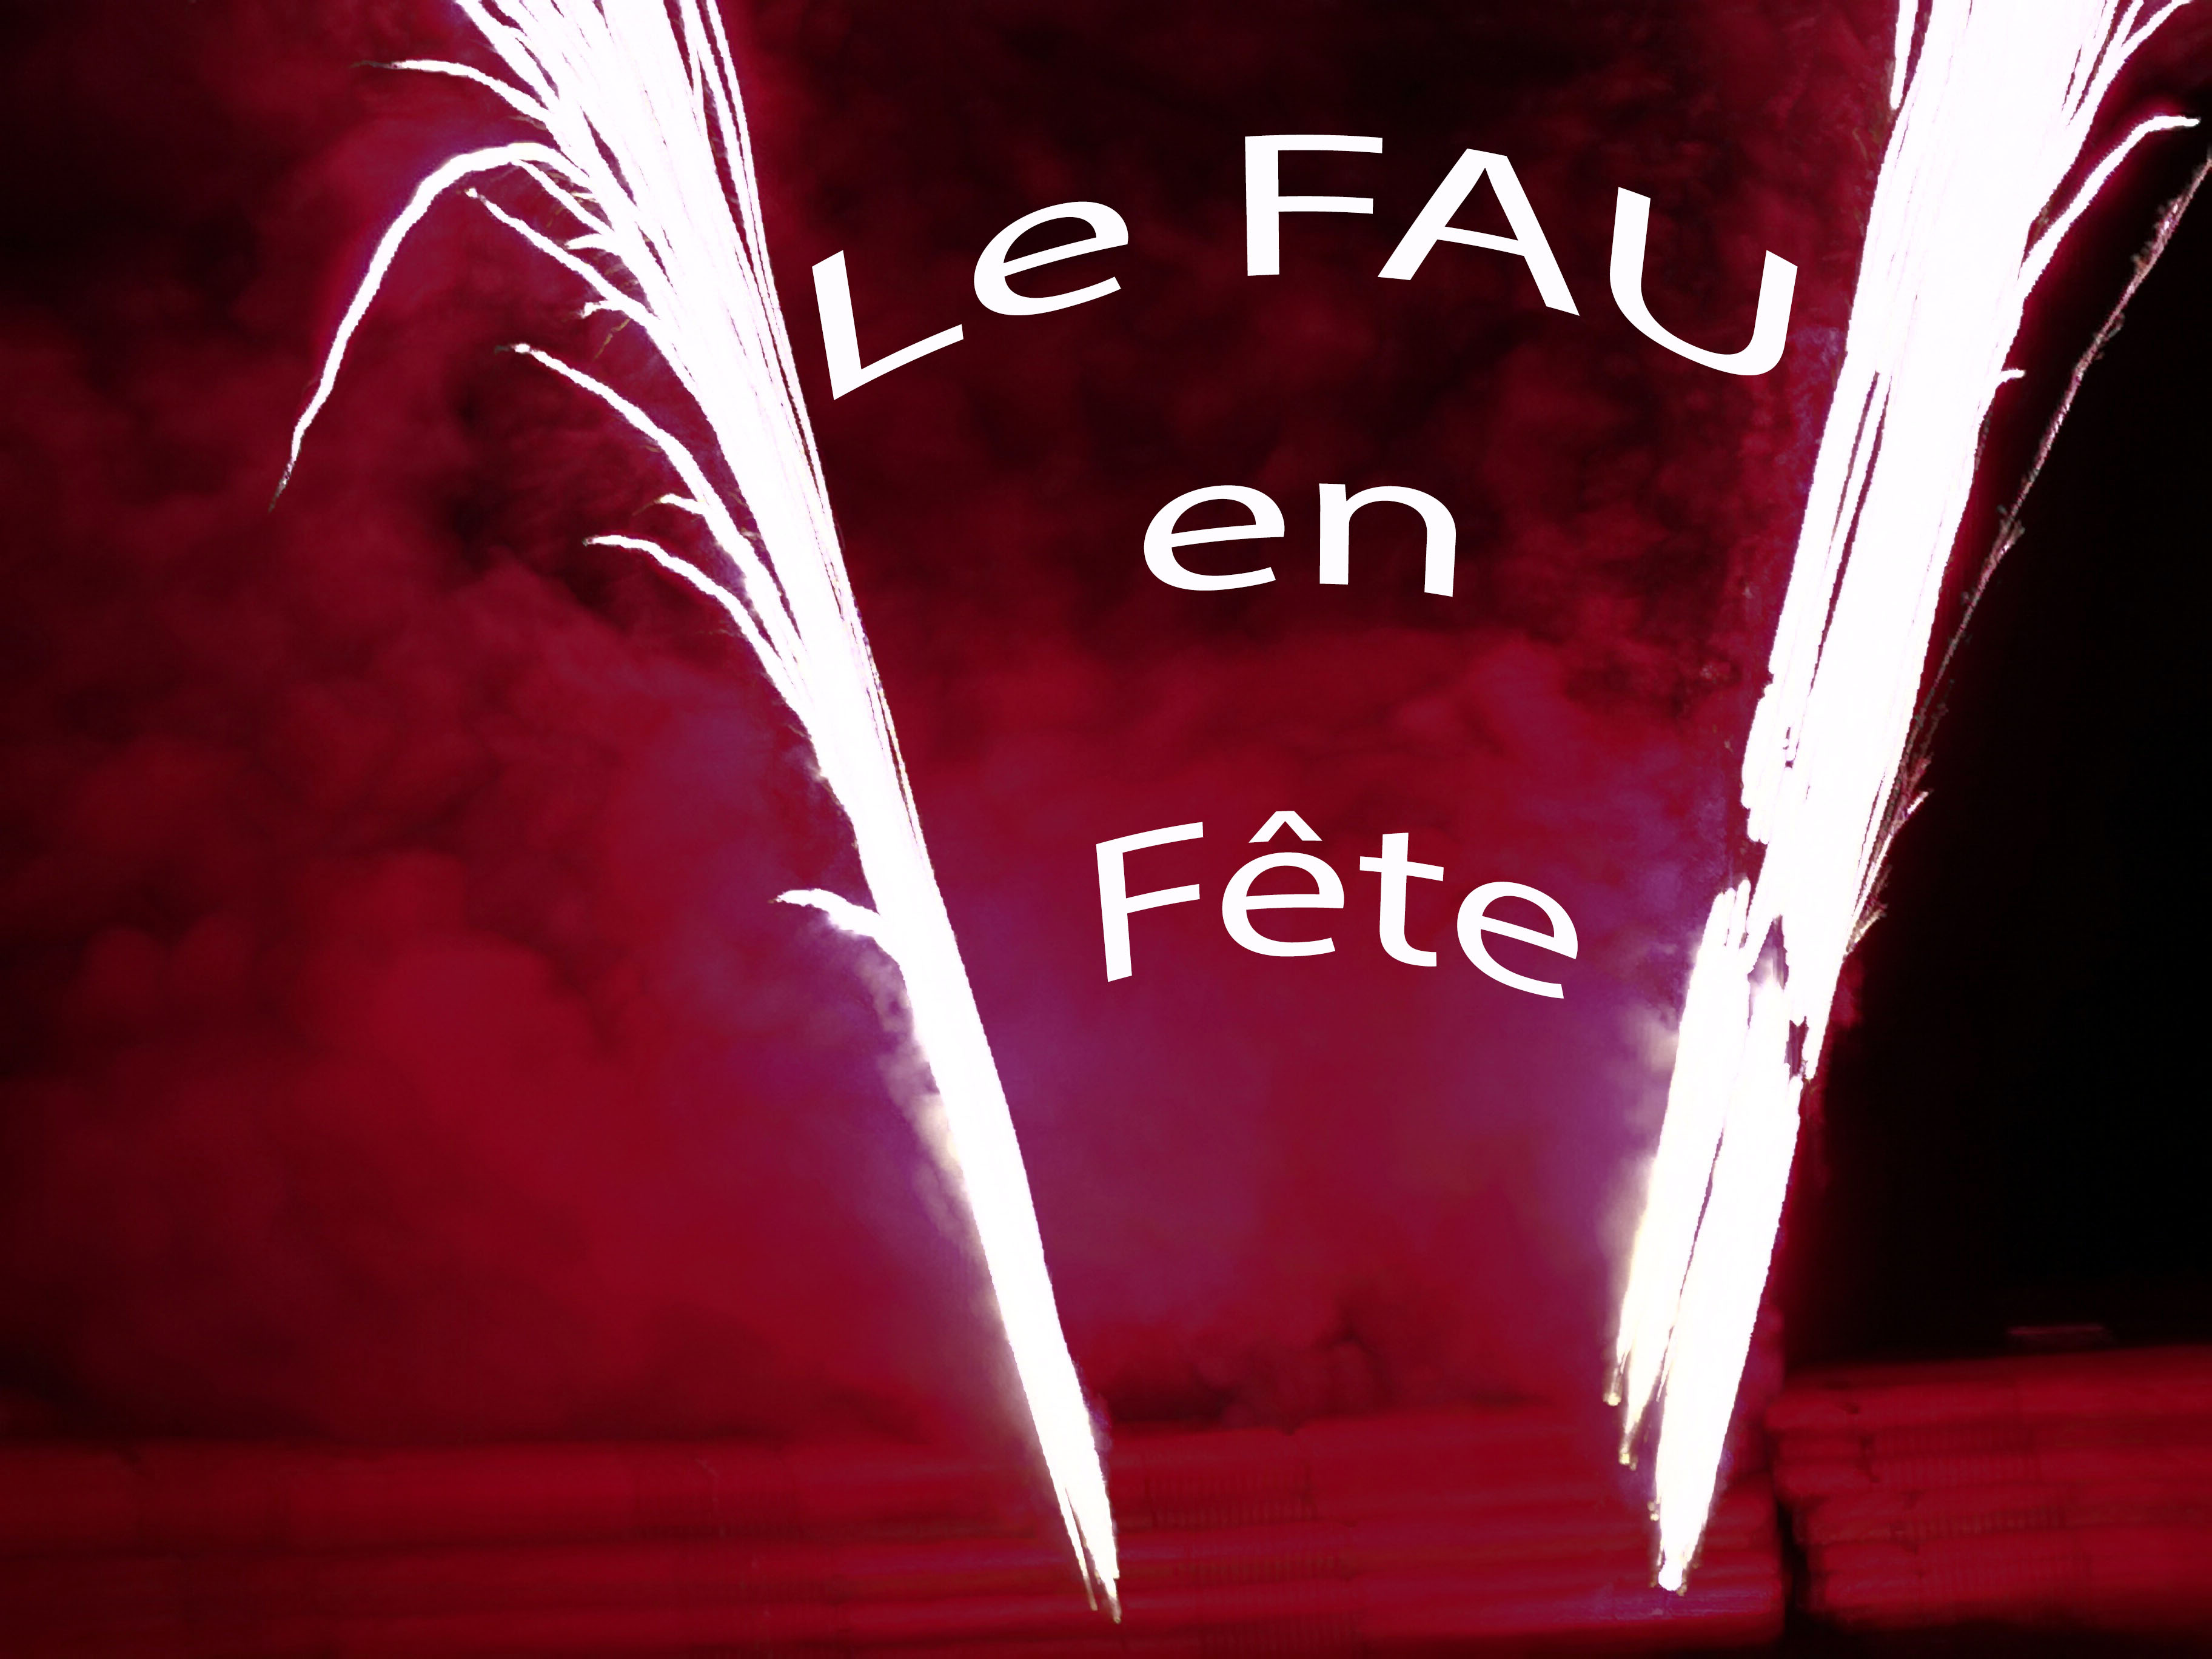 Le Fau de Peyre en fête 2019 post thumbnail image